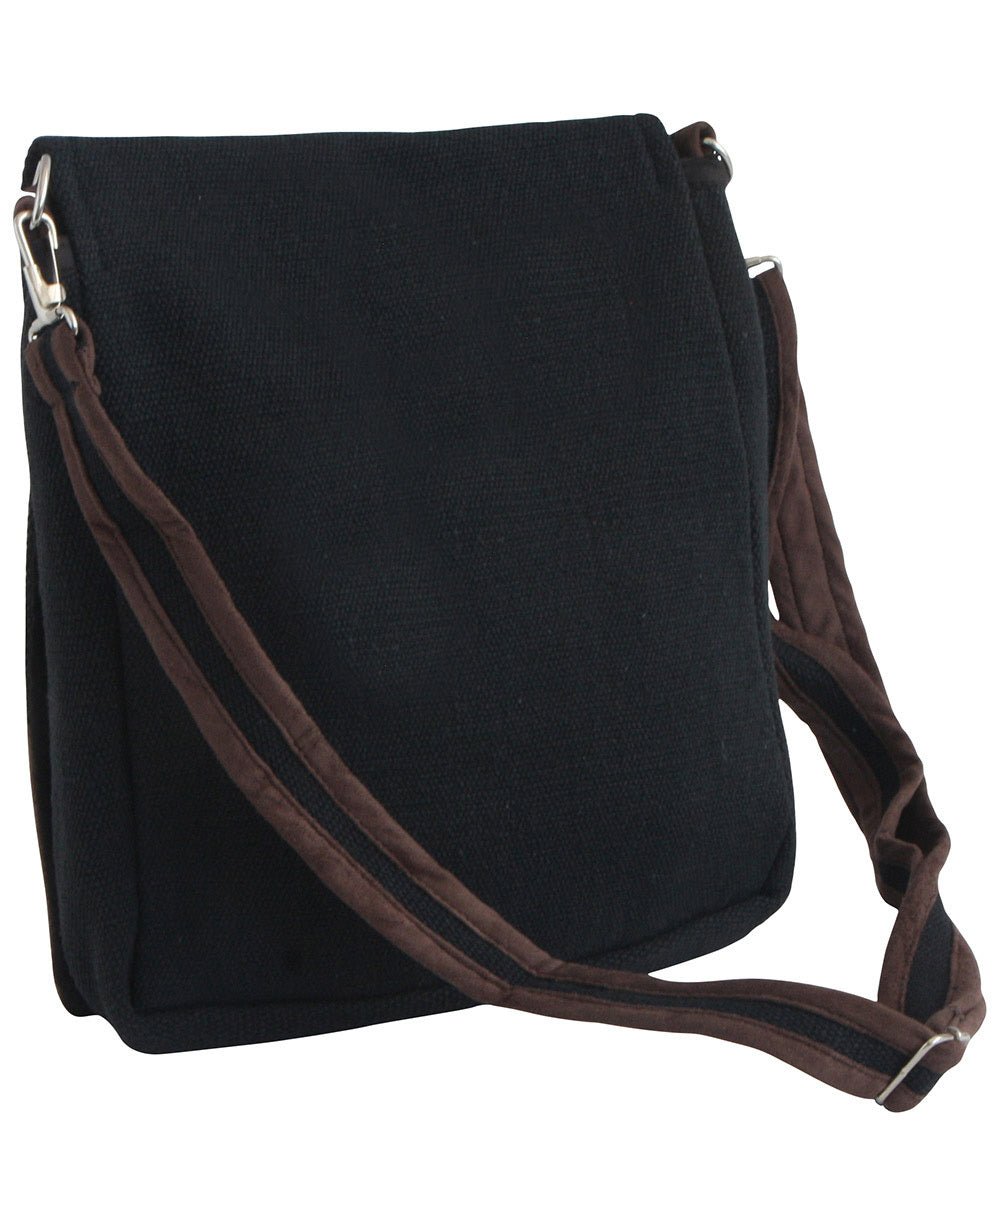 Om Messenger Cross Body Bag - Handbags Black